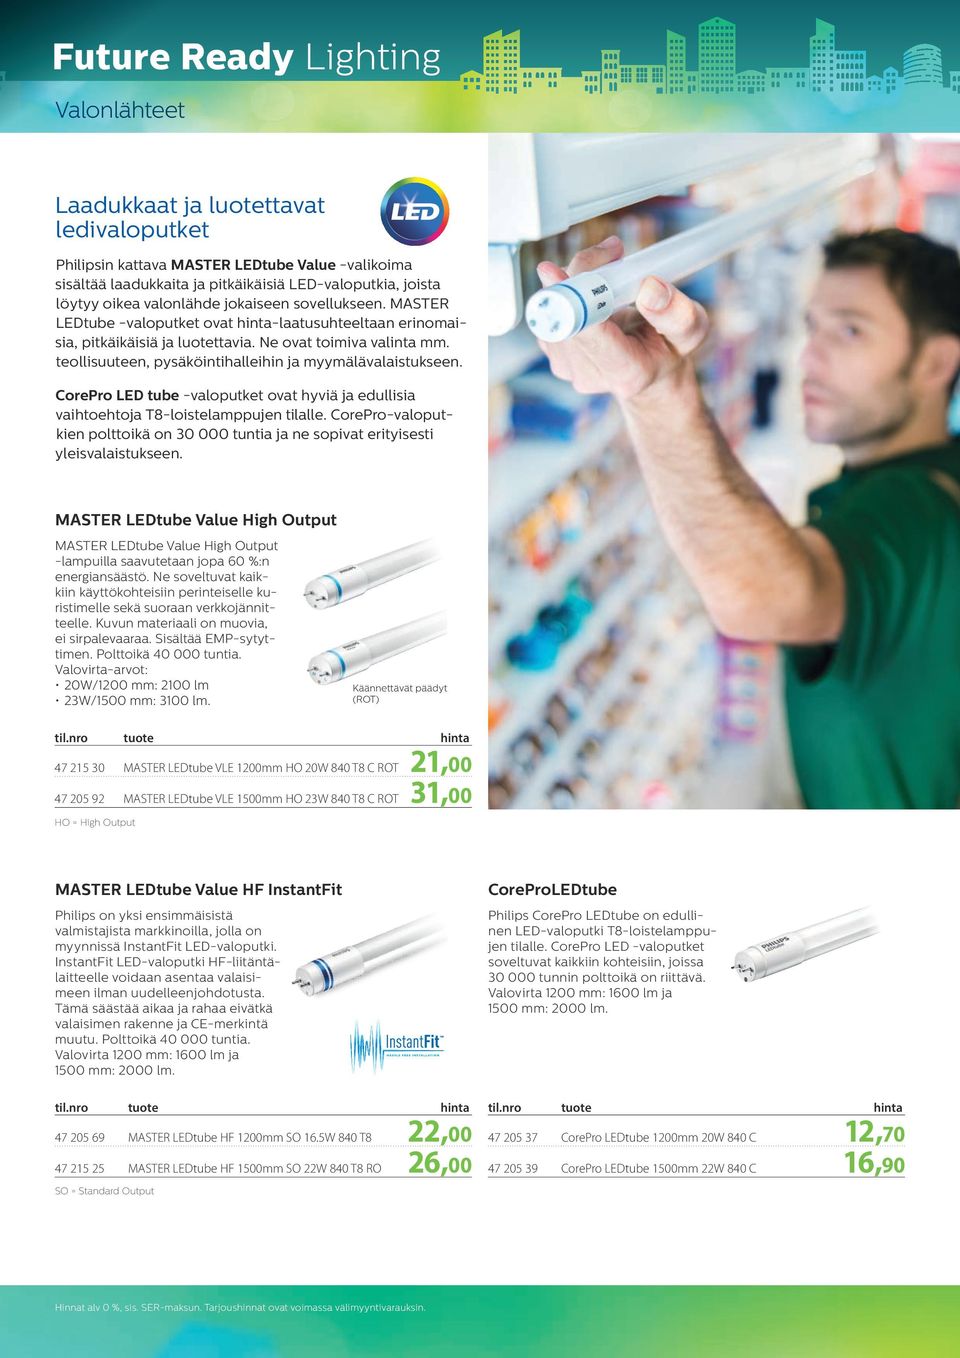 teollisuuteen, pysäköinti halleihin ja myymälä valaistukseen. CorePro LED tube -valoputket ovat hyviä ja edullisia vaihtoehtoja T8-loistelamppujen tilalle.